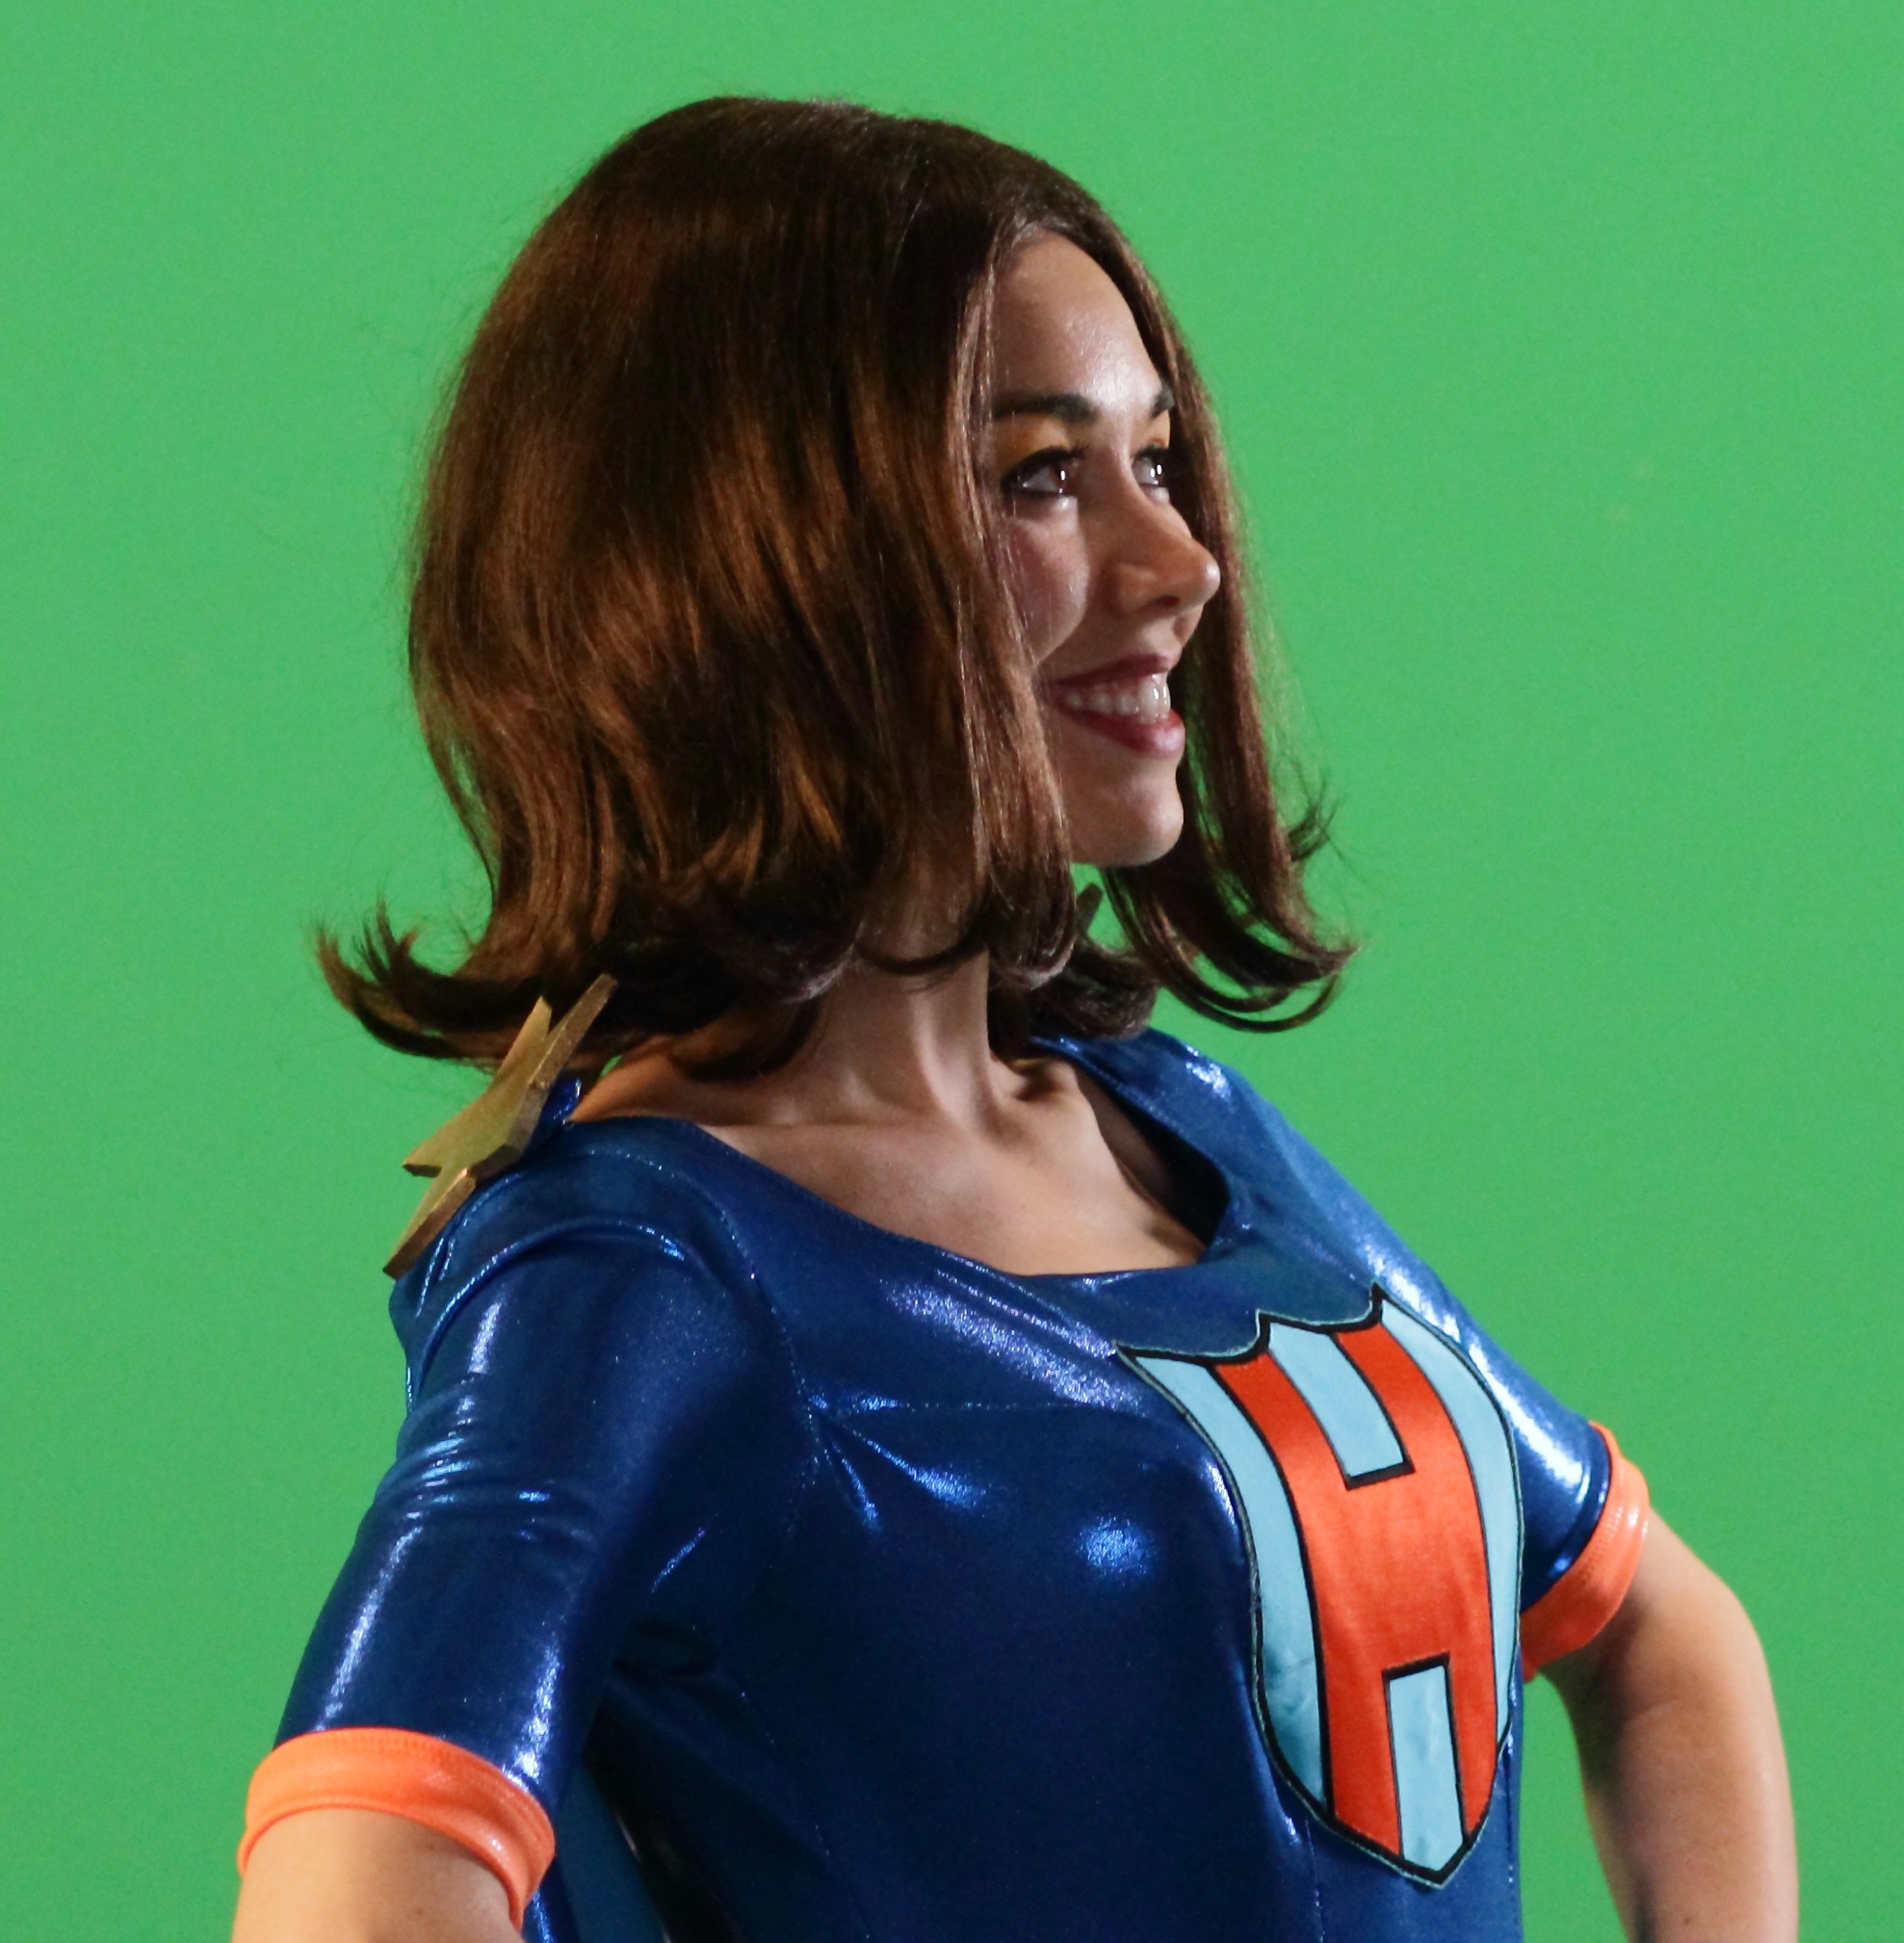 Tara as Hero Lass from Shelf Life in a green screen effects shot.